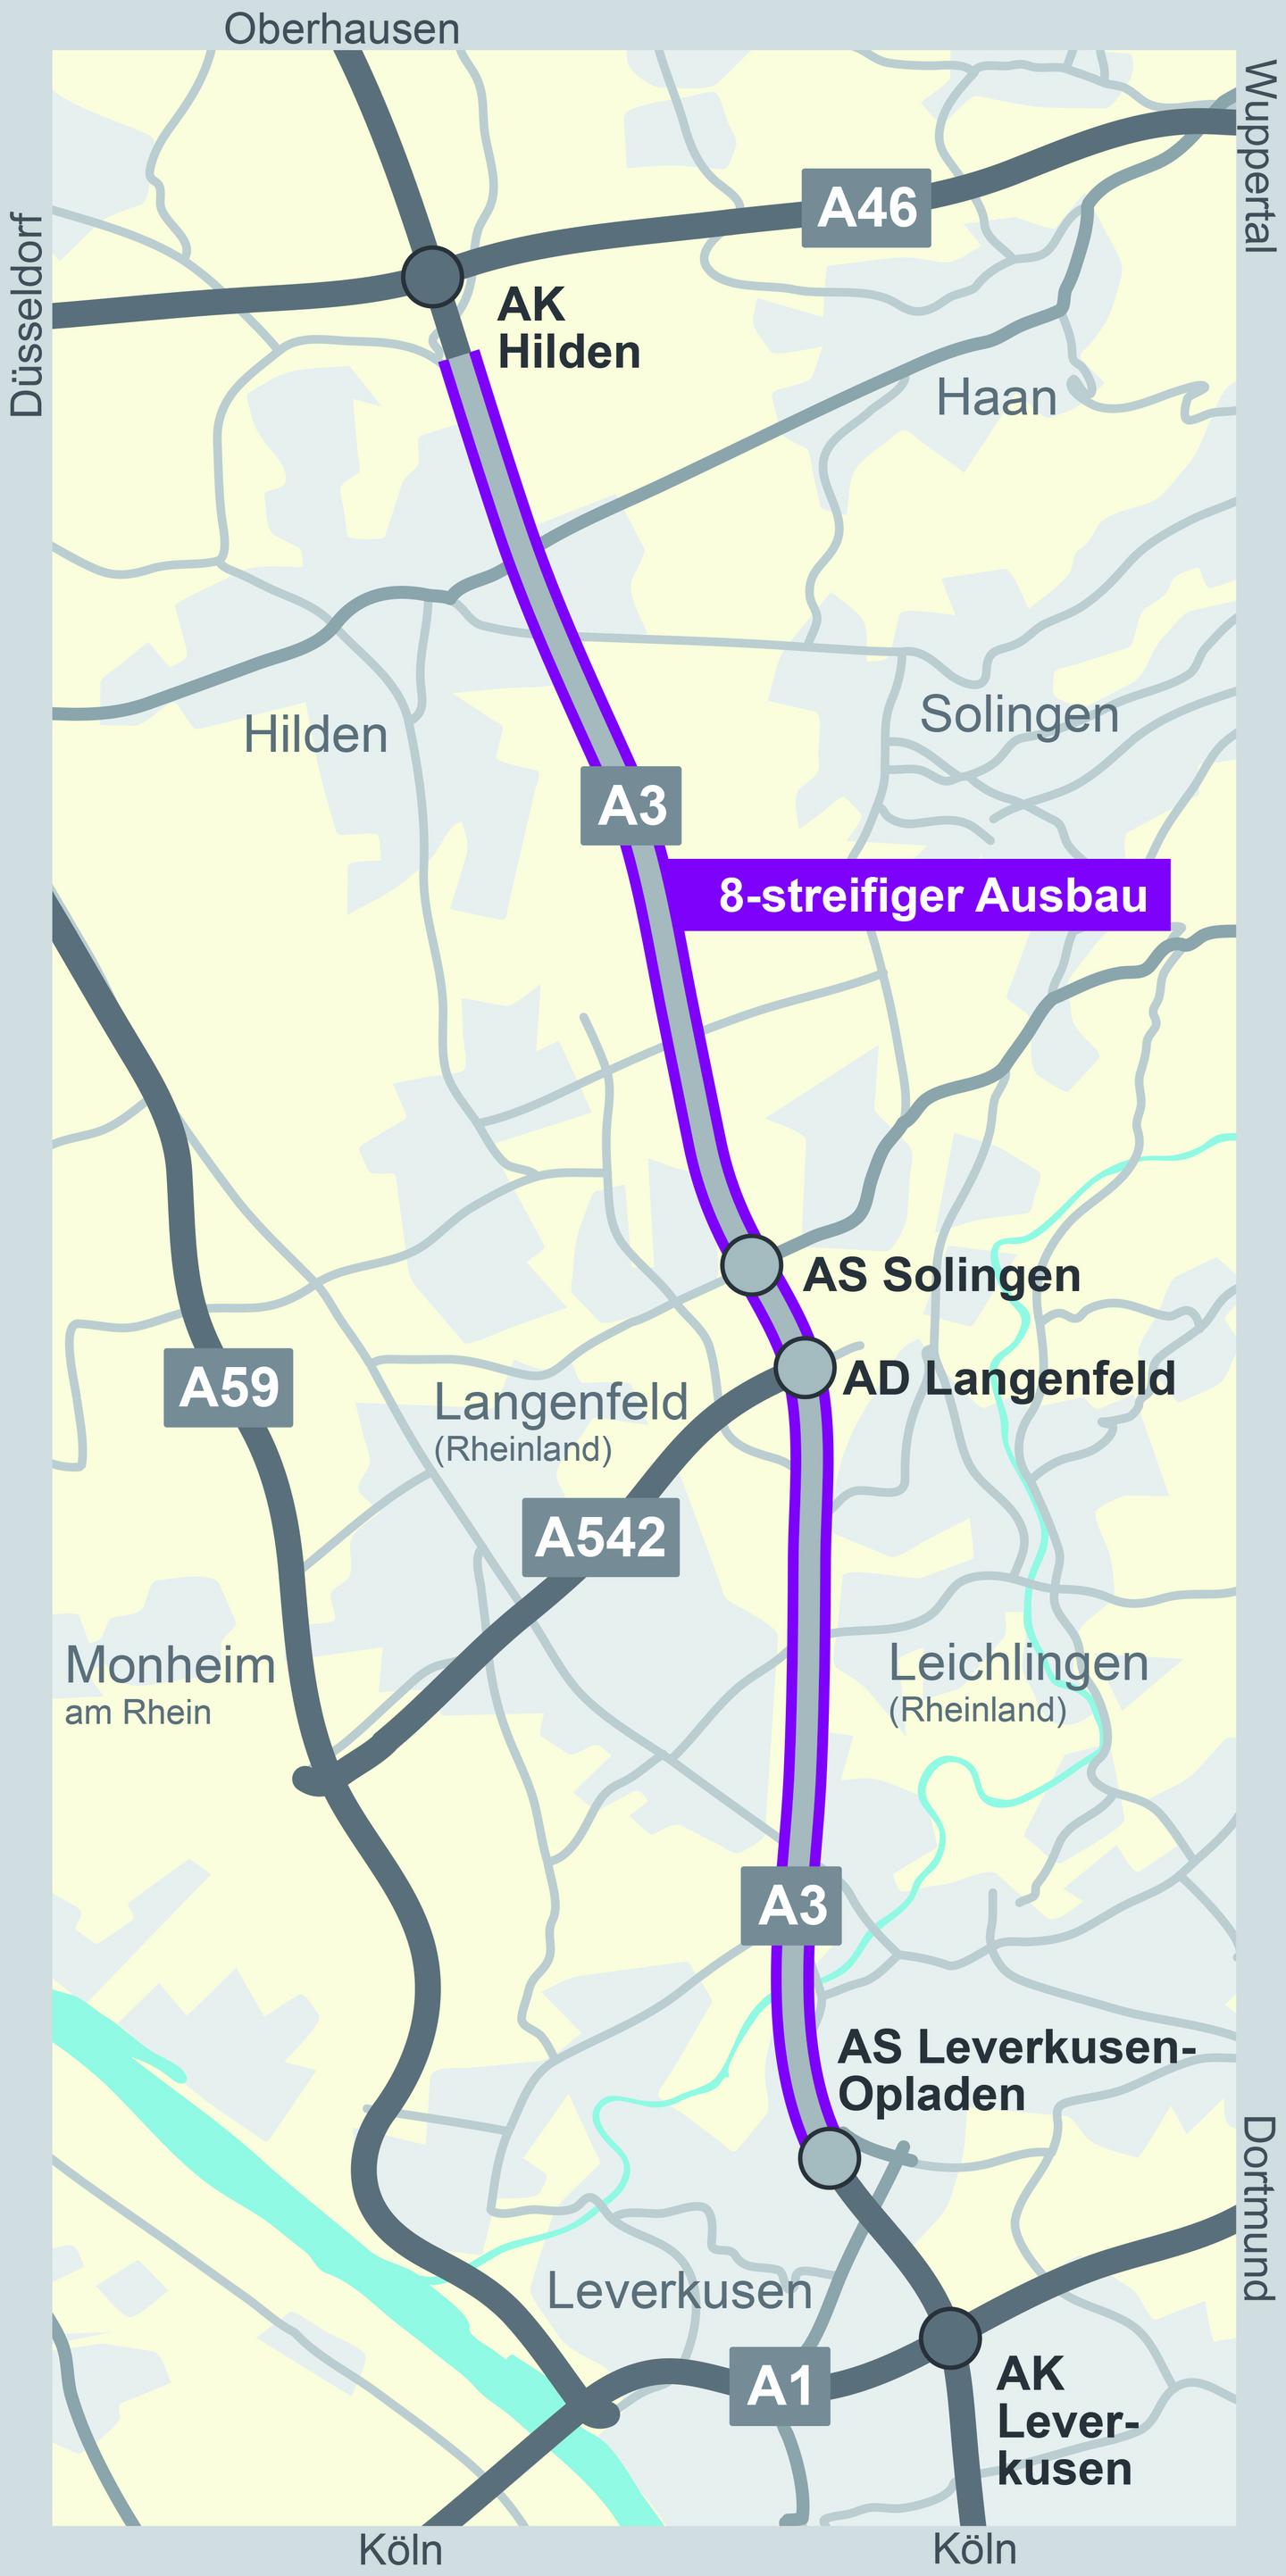 Das Bild zeigt eine Kartenansicht für den Ausbau der A3 zwischen Hilden und Leverkusen-Opladen.